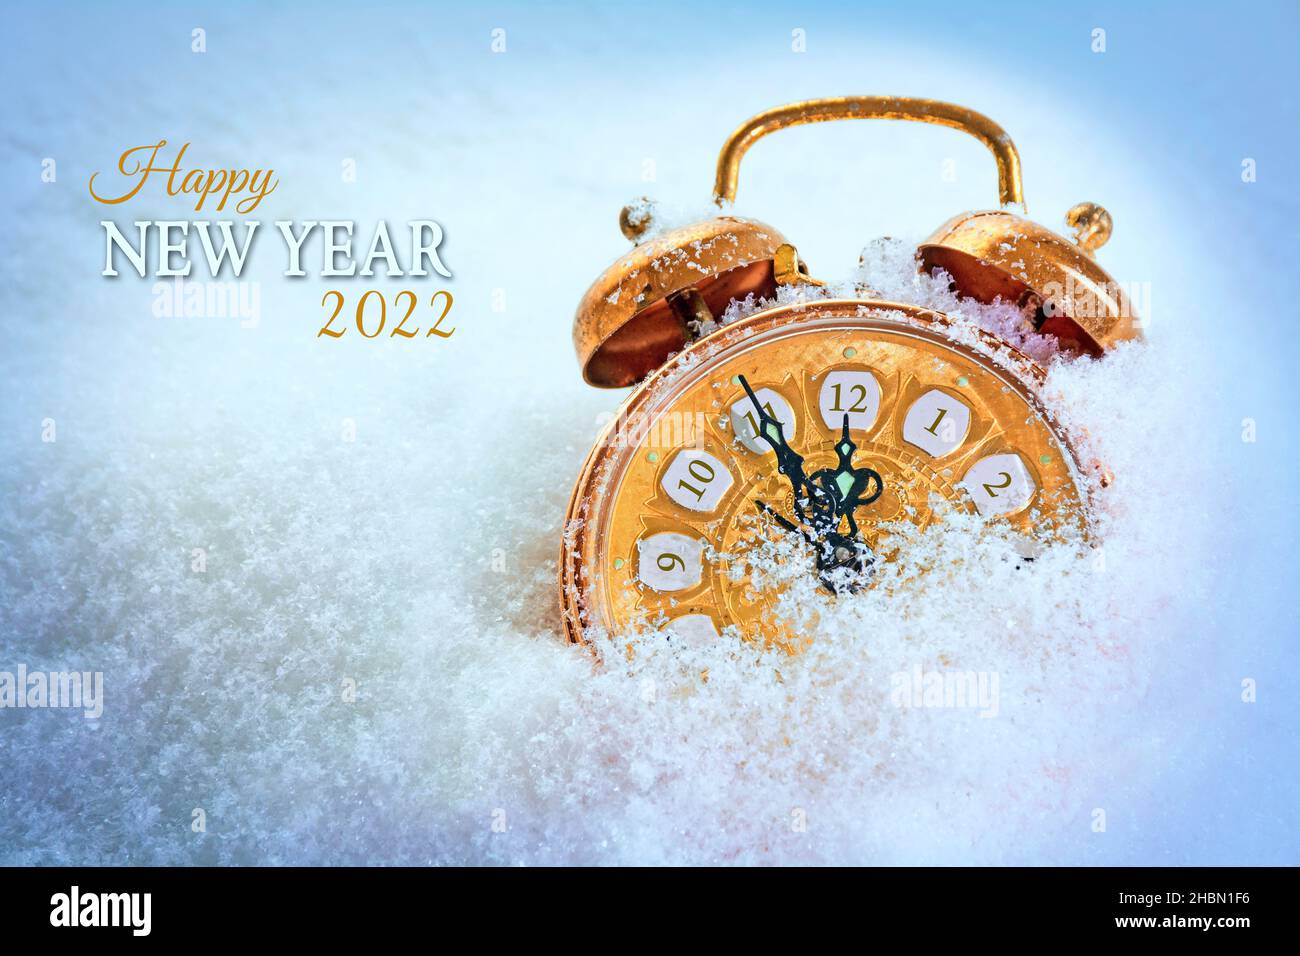 Orologio d'epoca color rame nella neve che indica cinque minuti prima di dodici, testo Happy New Year 2022, biglietto d'auguri stagionale con spazio copia Foto Stock